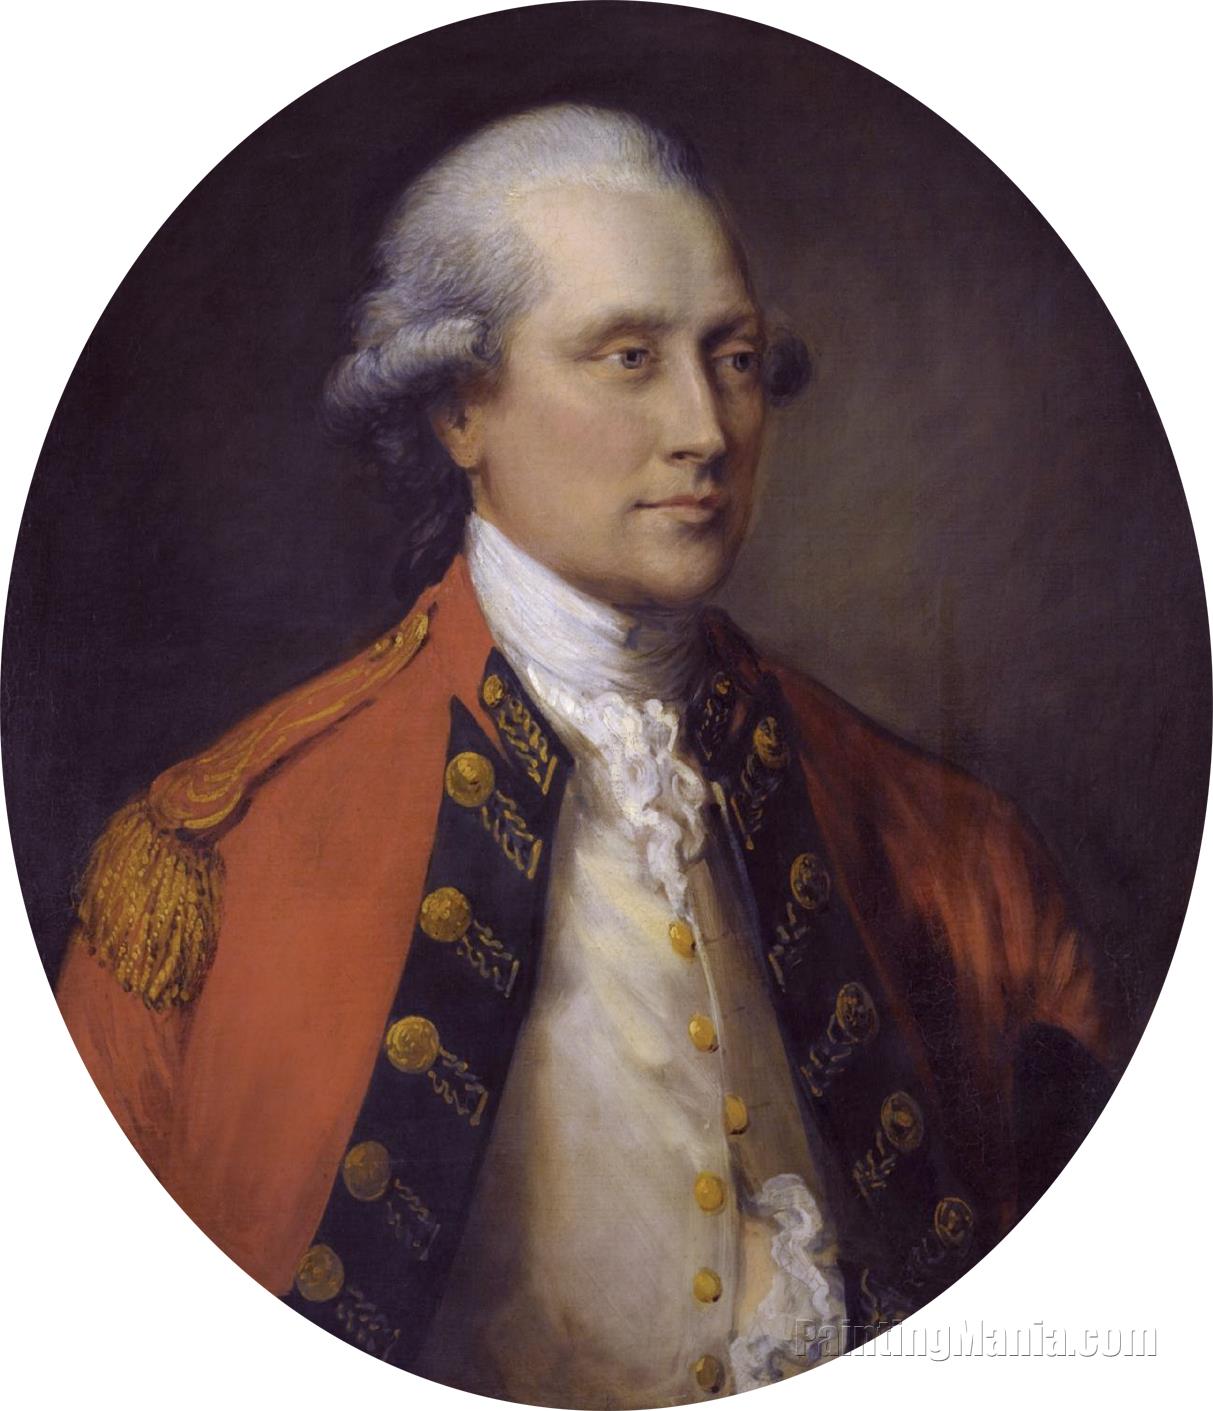 Portrait of John Campbell, 5th Duke of Argyll